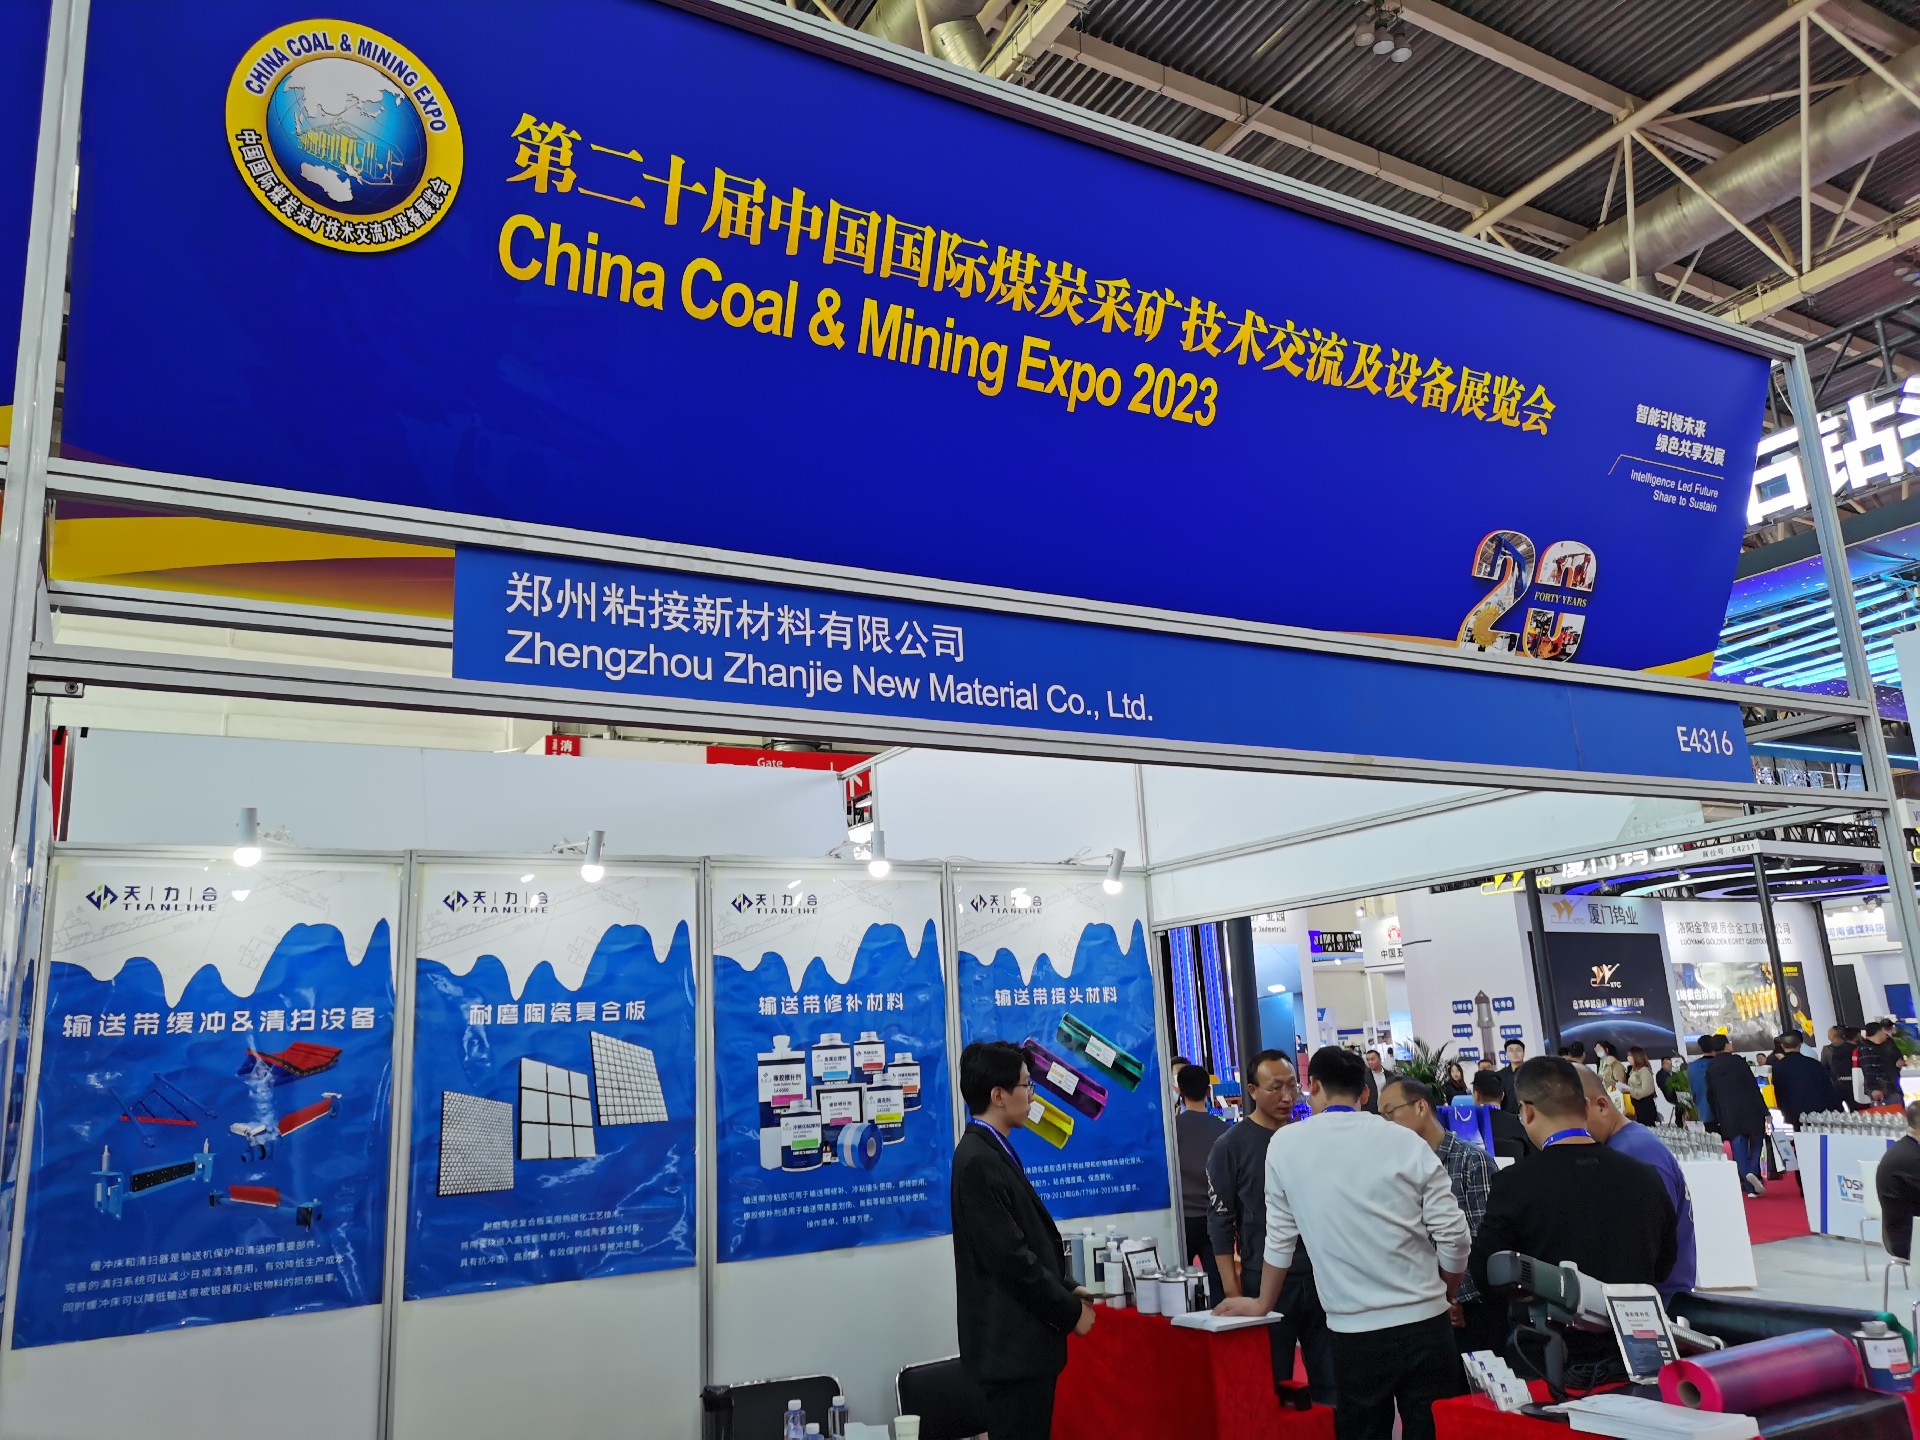 China Coal & Mining Expo 2023